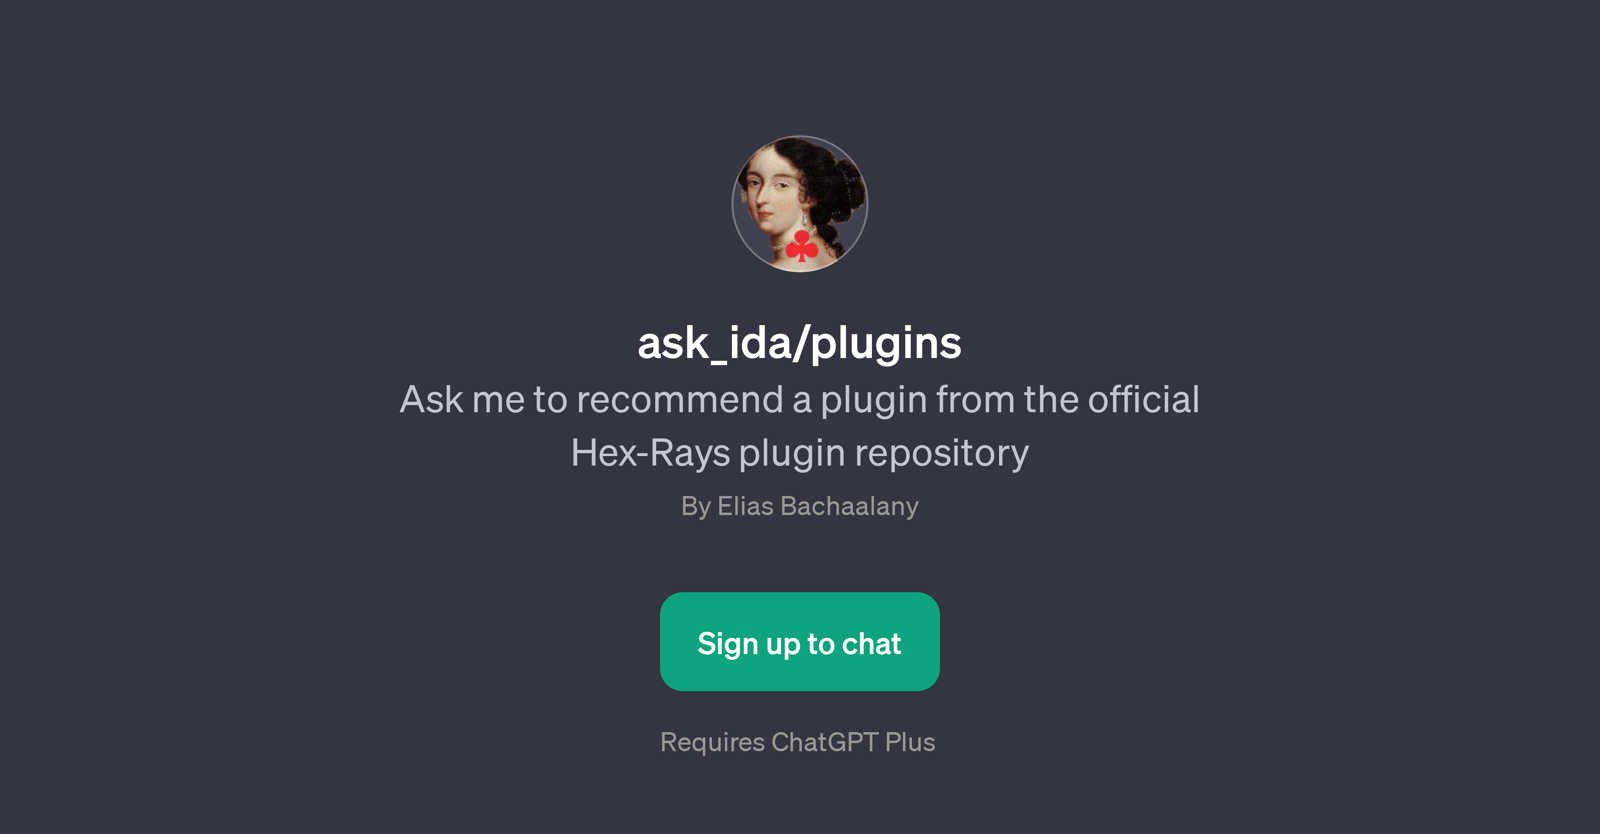 ask_ida/plugins website